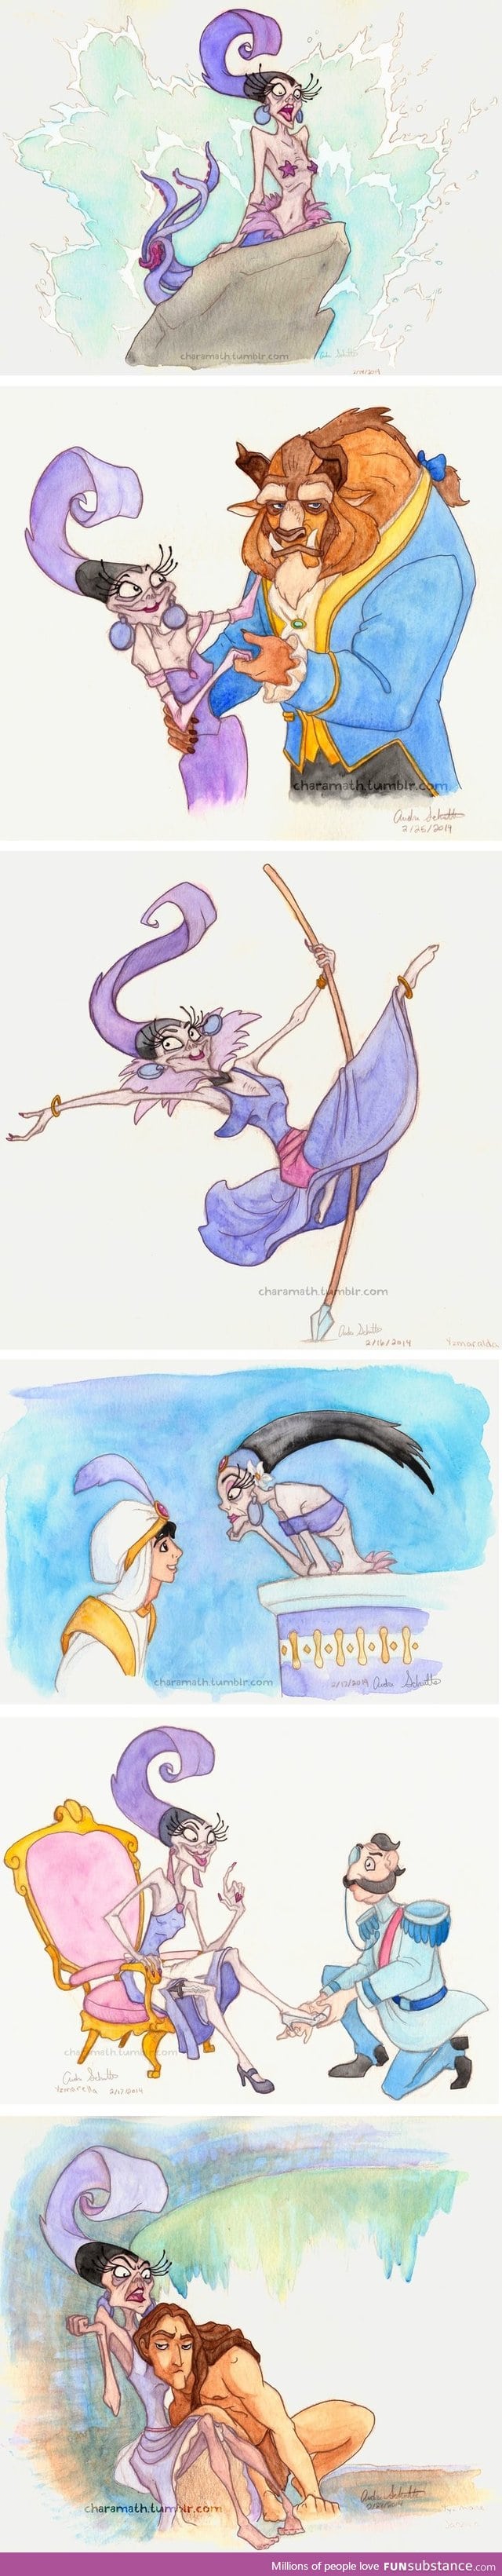 Yzma as Disney Princesses